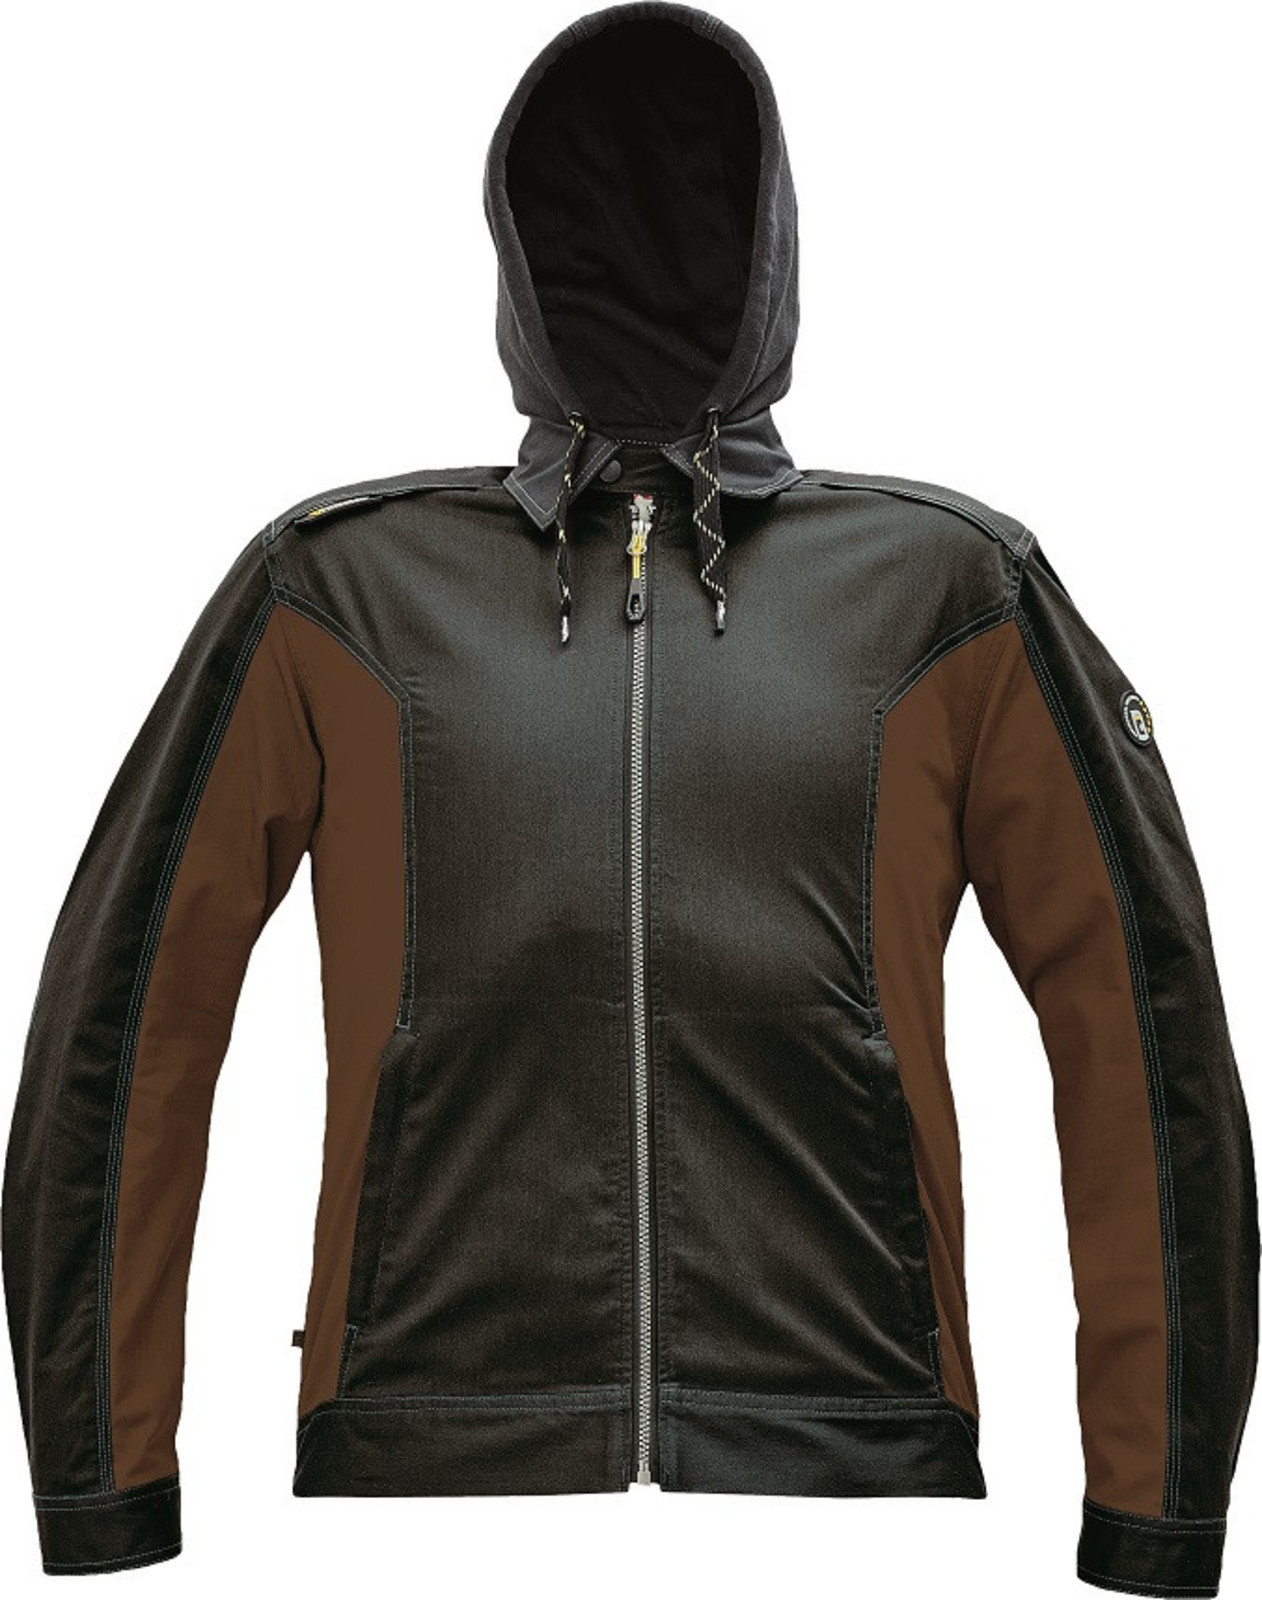 Strečová pracovná bunda Cerva Dayboro - veľkosť: 50, farba: tmavo hnedá